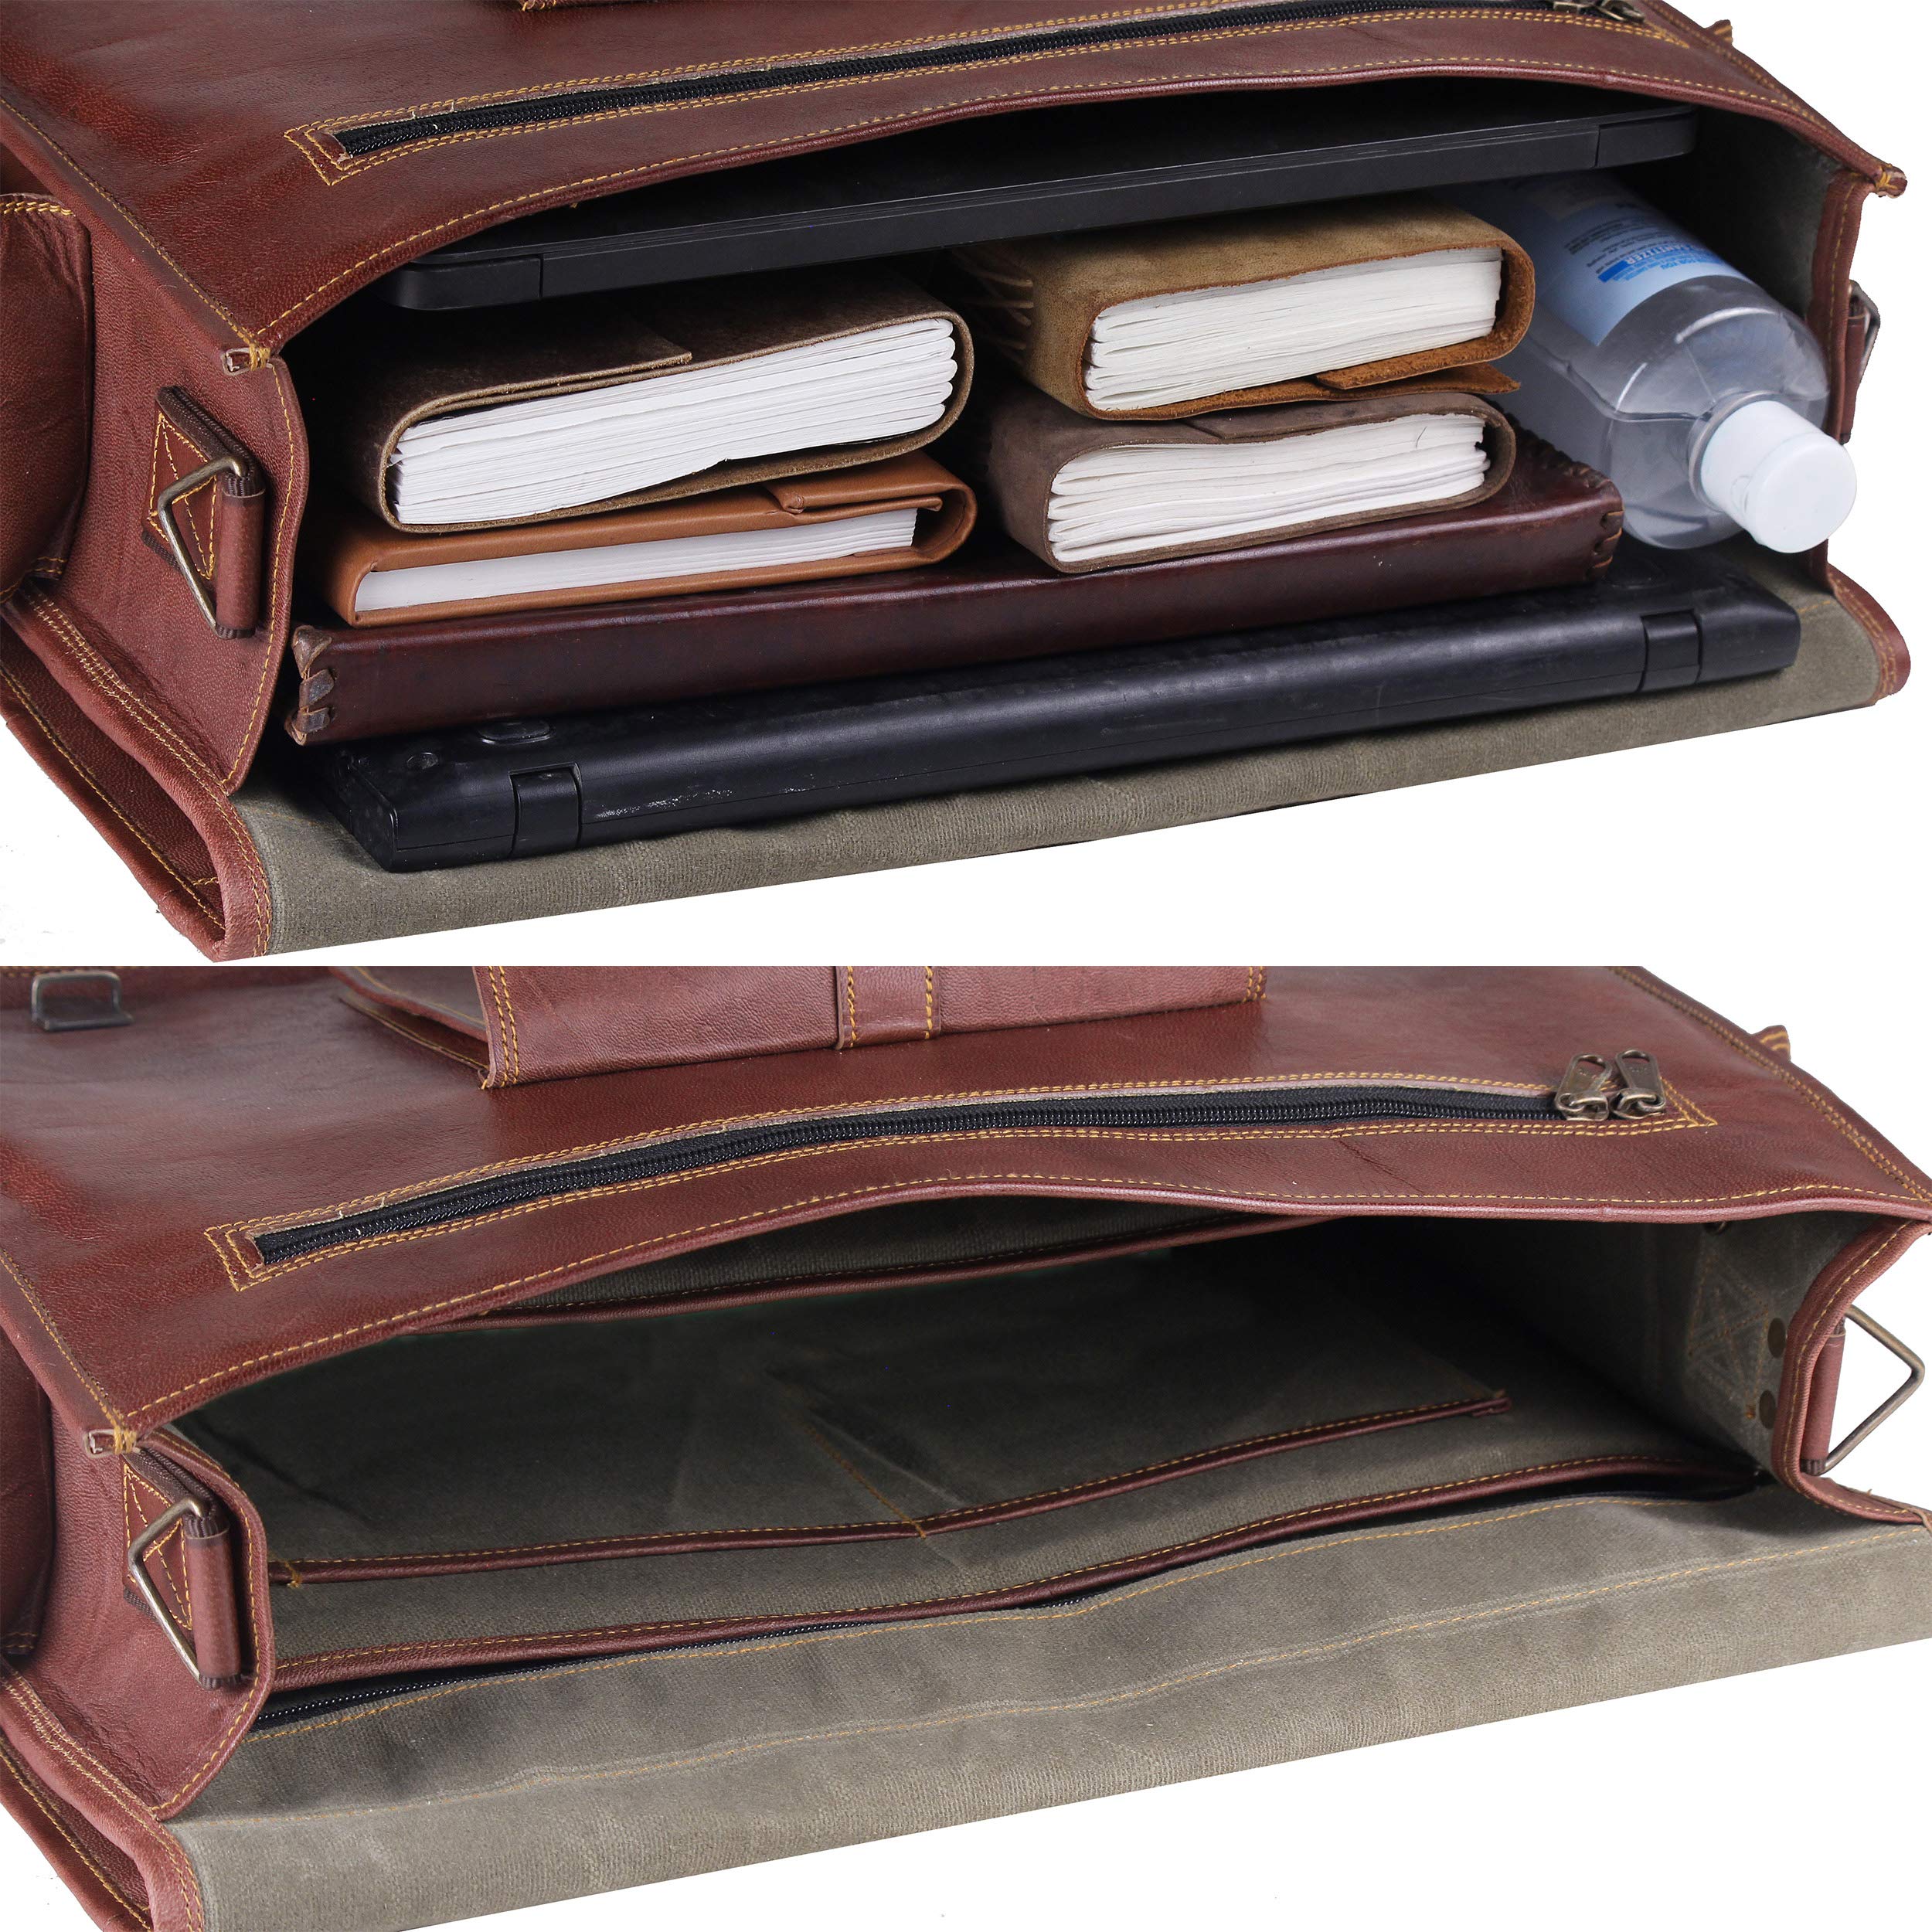 HULSH Leather Messenger Bag for Men – Vintage Laptop Bag Leather Satchel for Men - 18 inch Padded Brown Leather Computer Bag